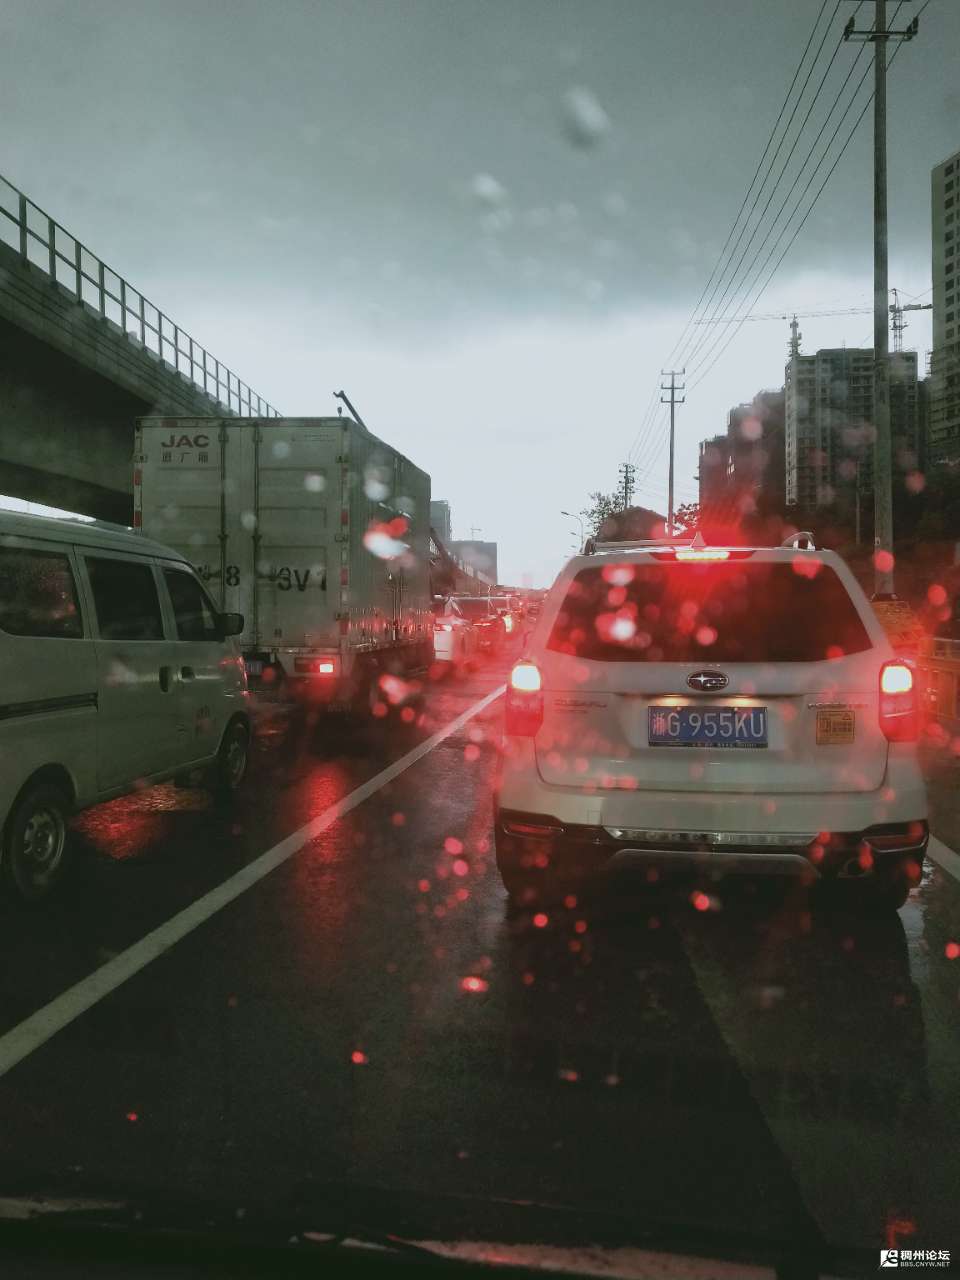 下雨,堵车